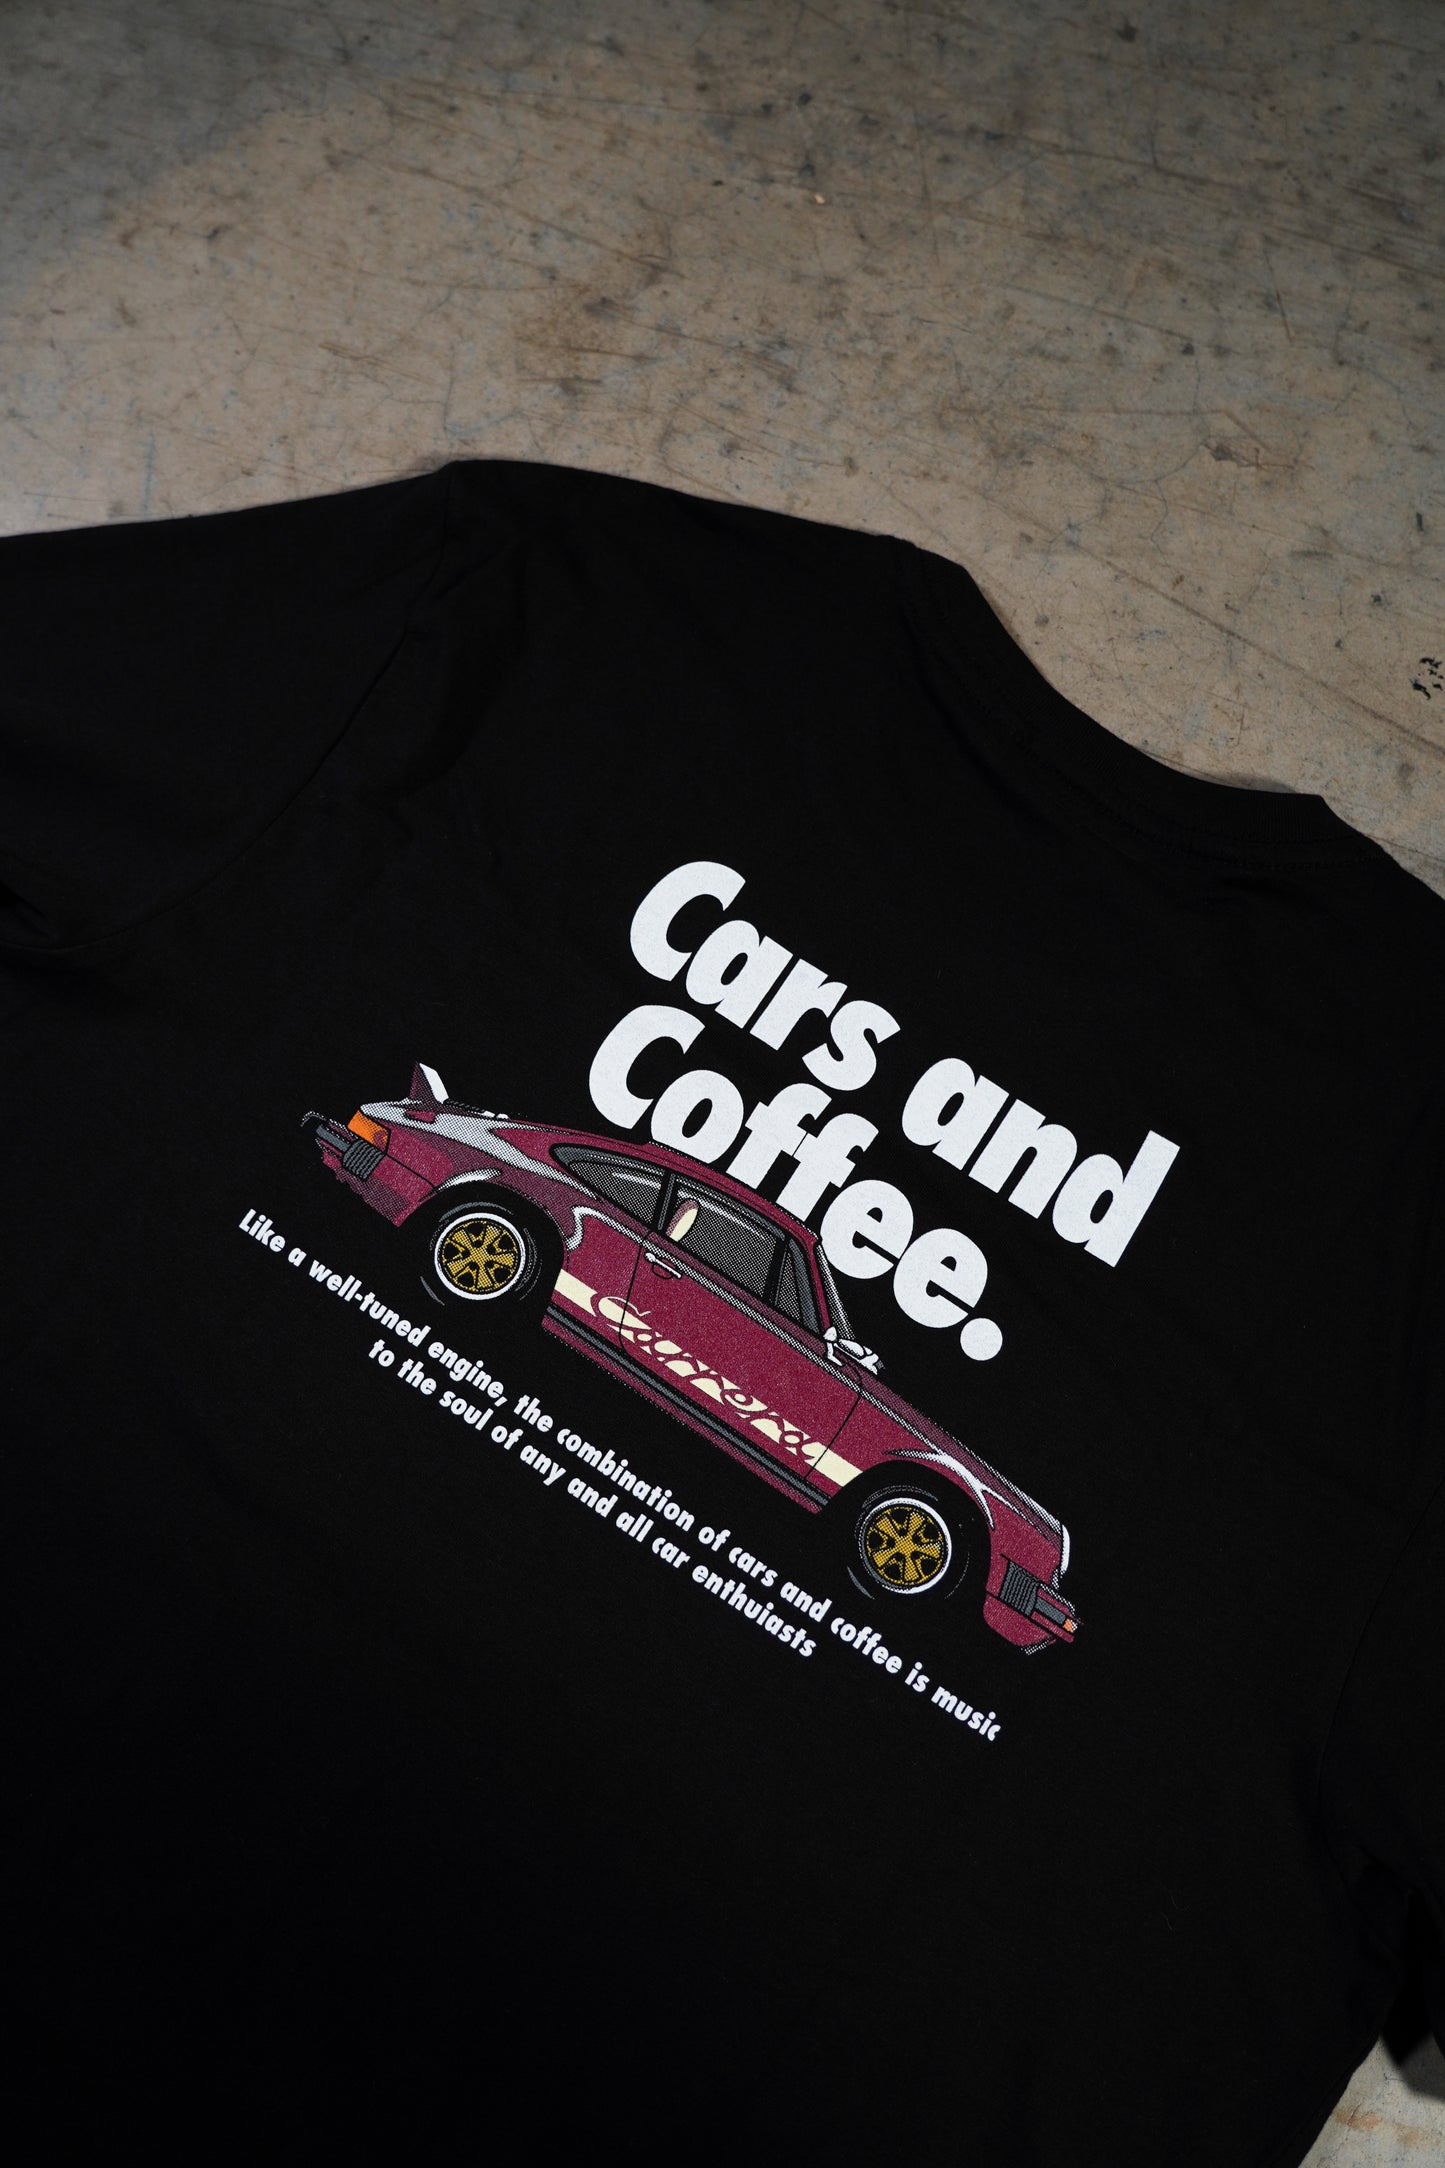 Cars And Coffee Tee